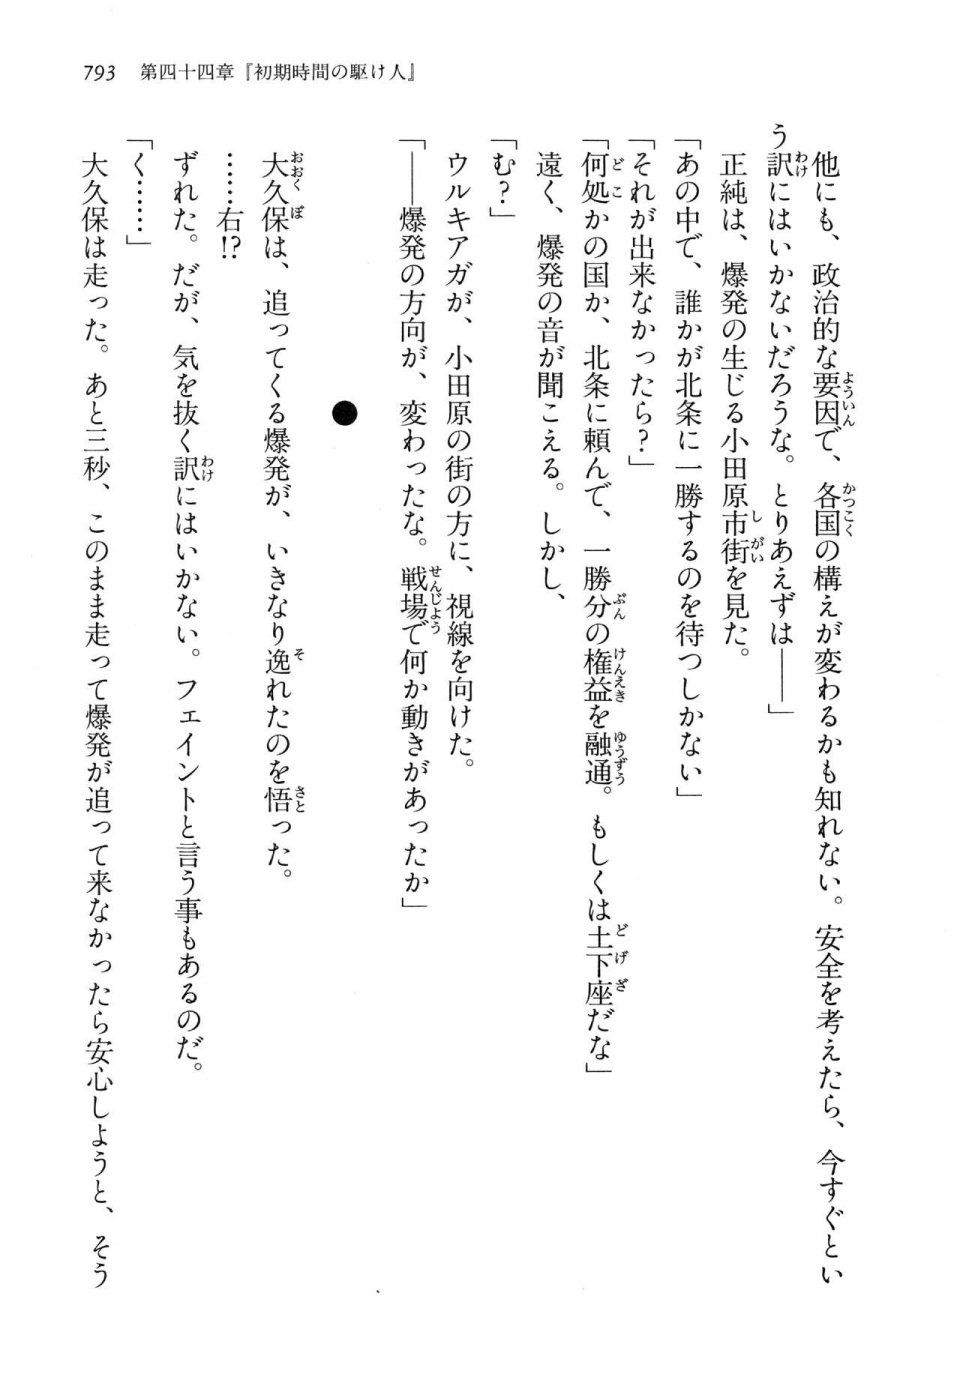 Kyoukai Senjou no Horizon LN Vol 14(6B) - Photo #793